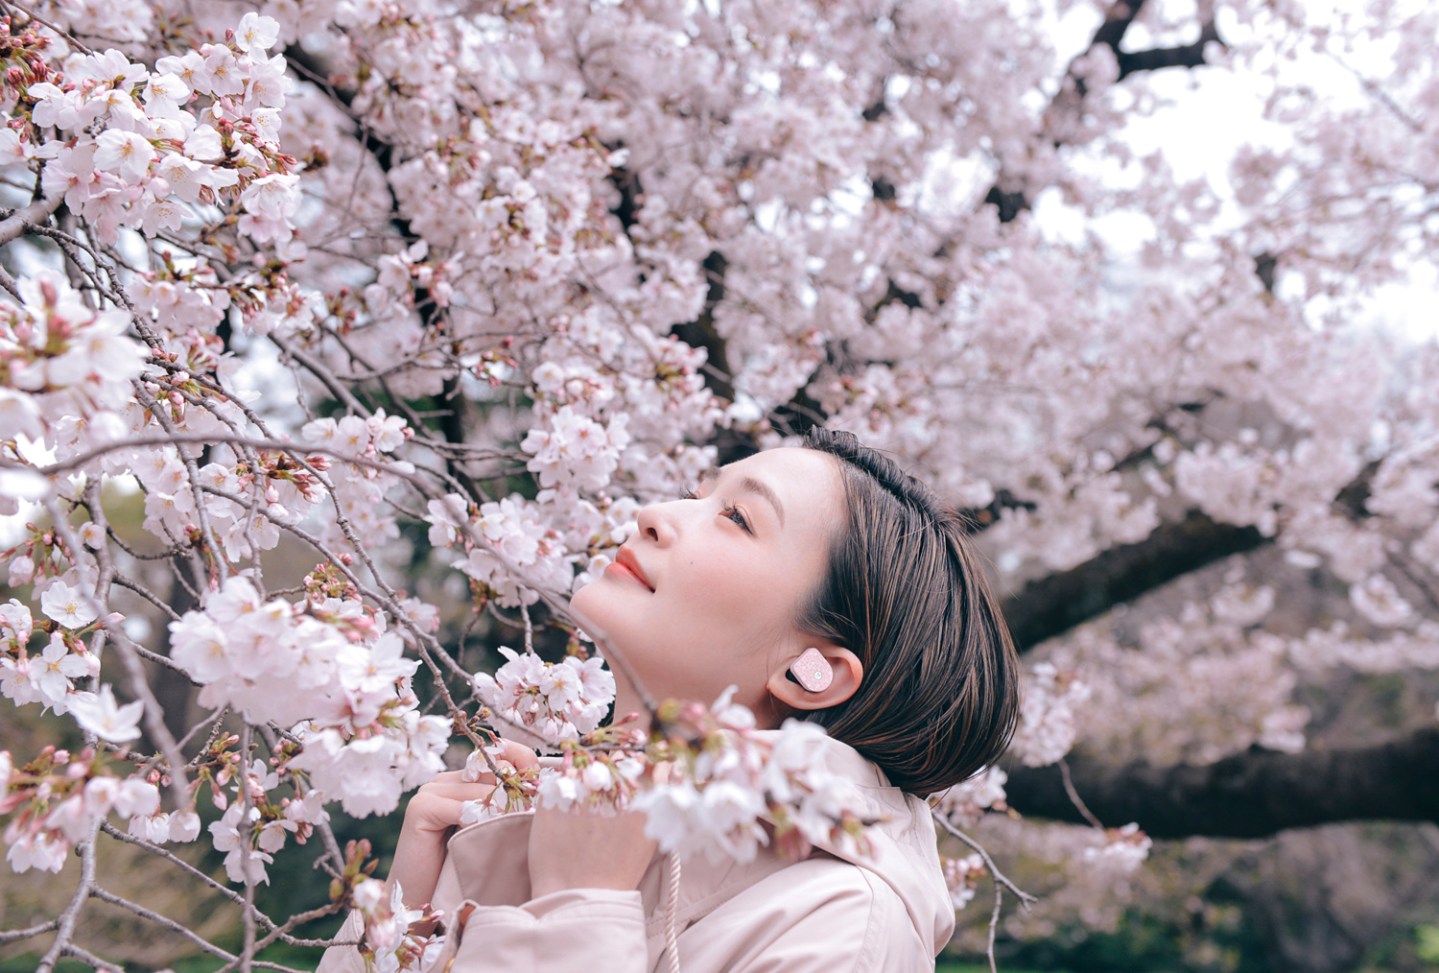 MW07 in Cherry Blossom, shot at the Hamarikyu Gardens in Tokyo